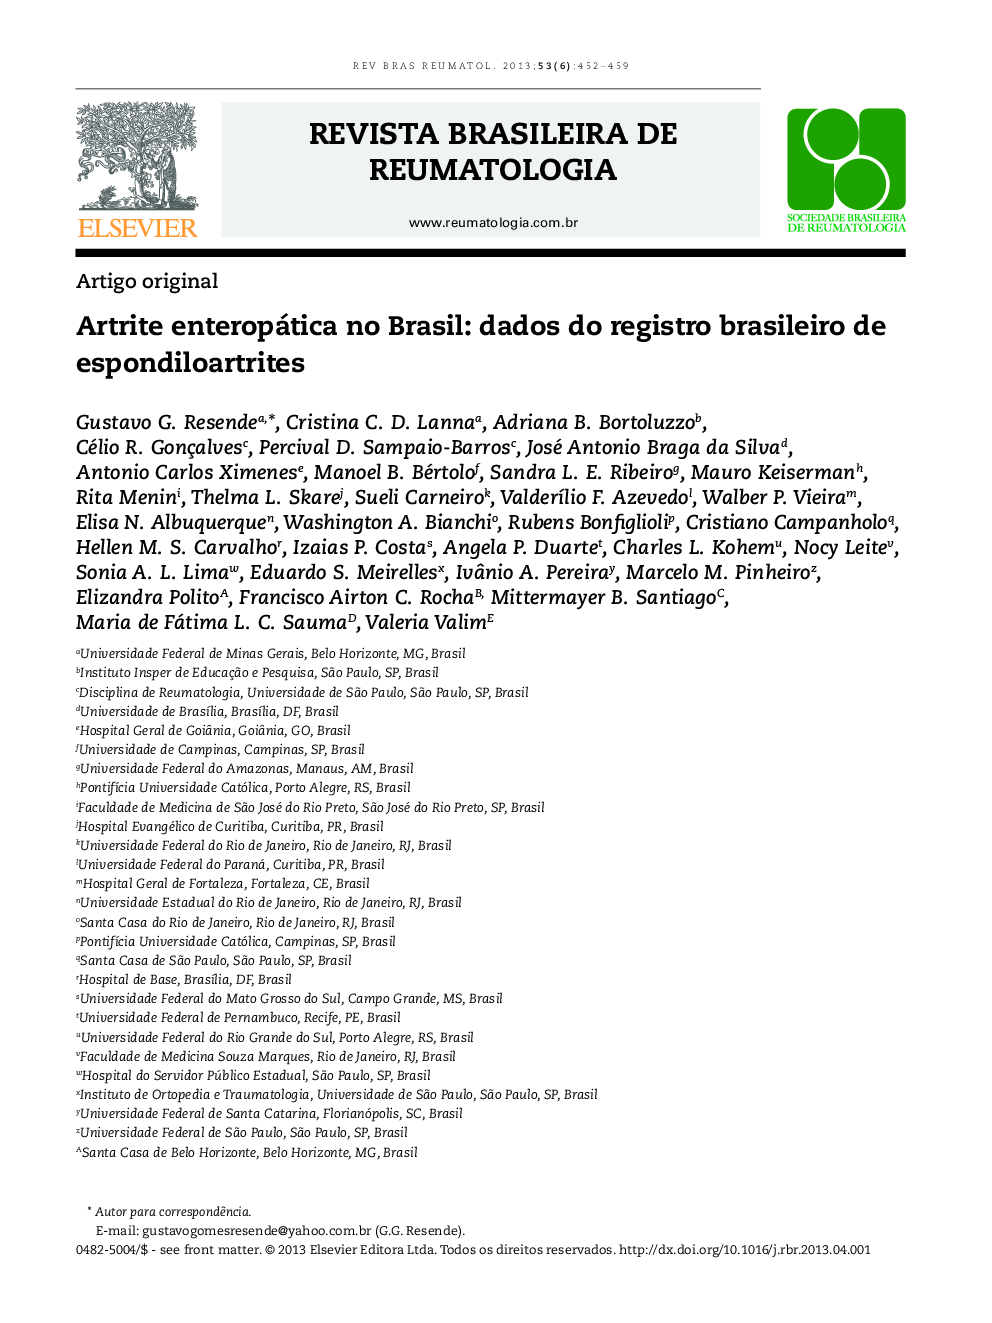 Artrite enteropática no Brasil: dados do registro brasileiro de espondiloartrites